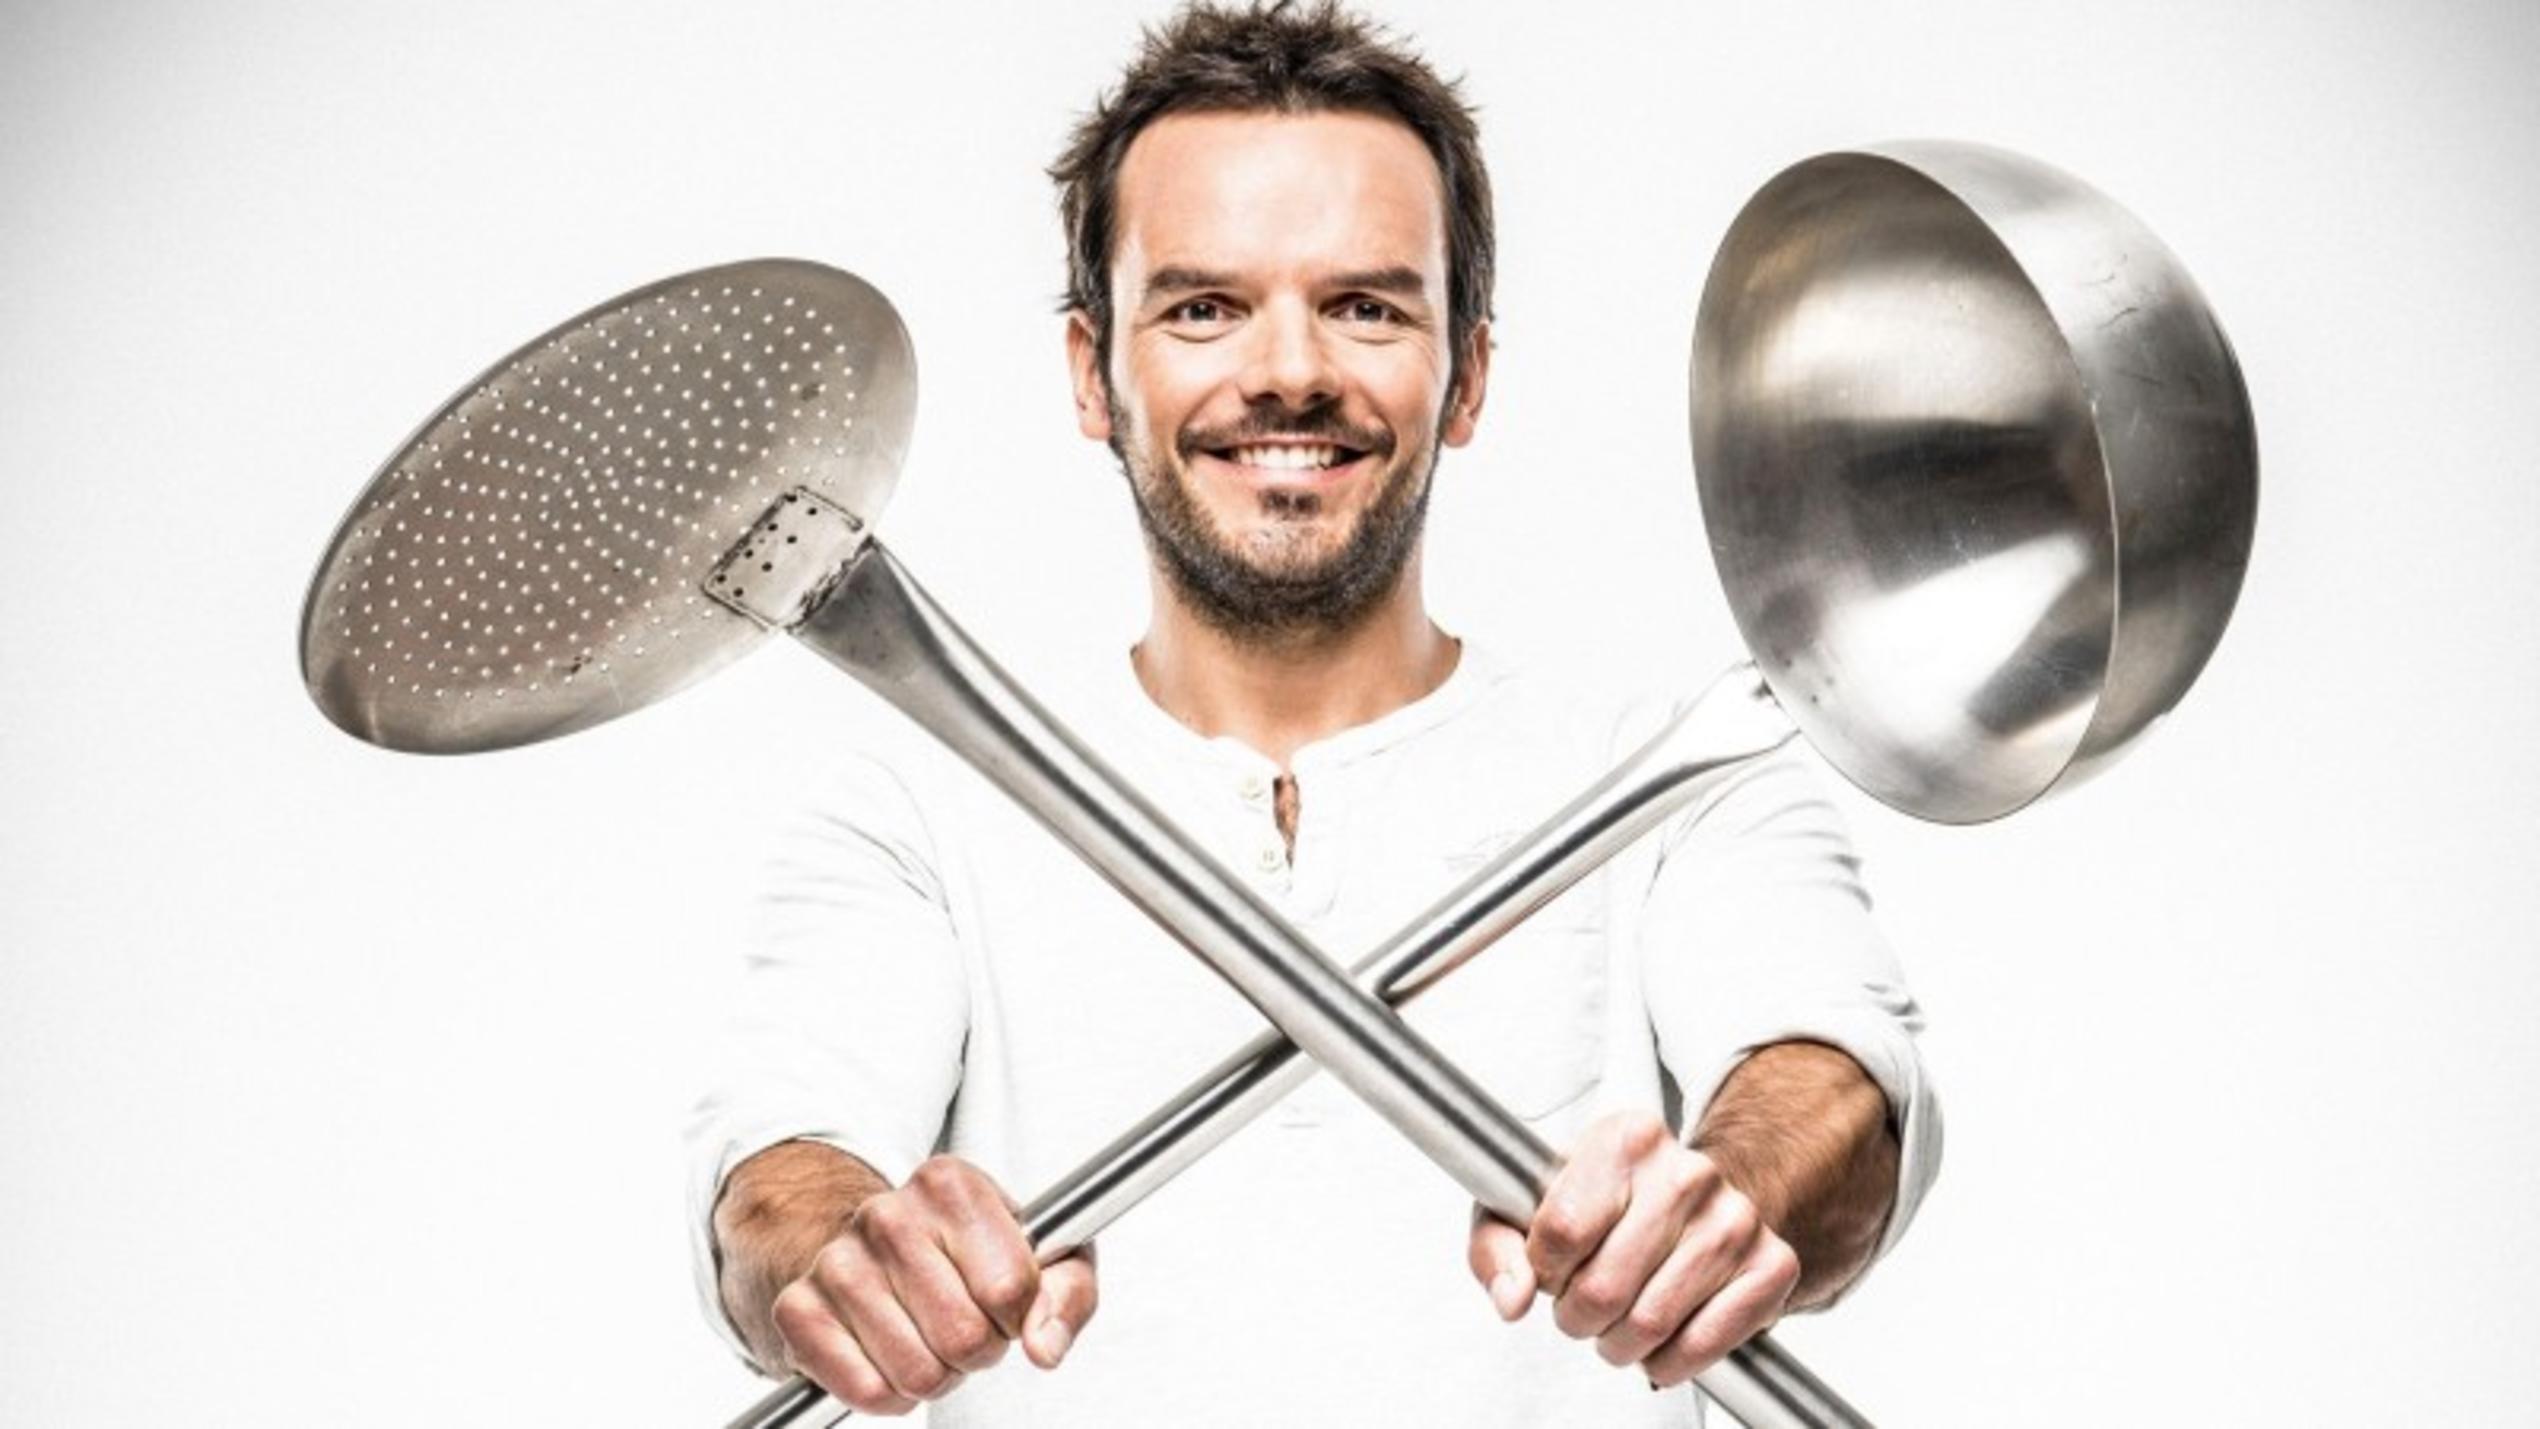 TV-Koch Steffen Henssler tritt bei "Grill den Henssler" gegen prominente Hobby-Köche an.